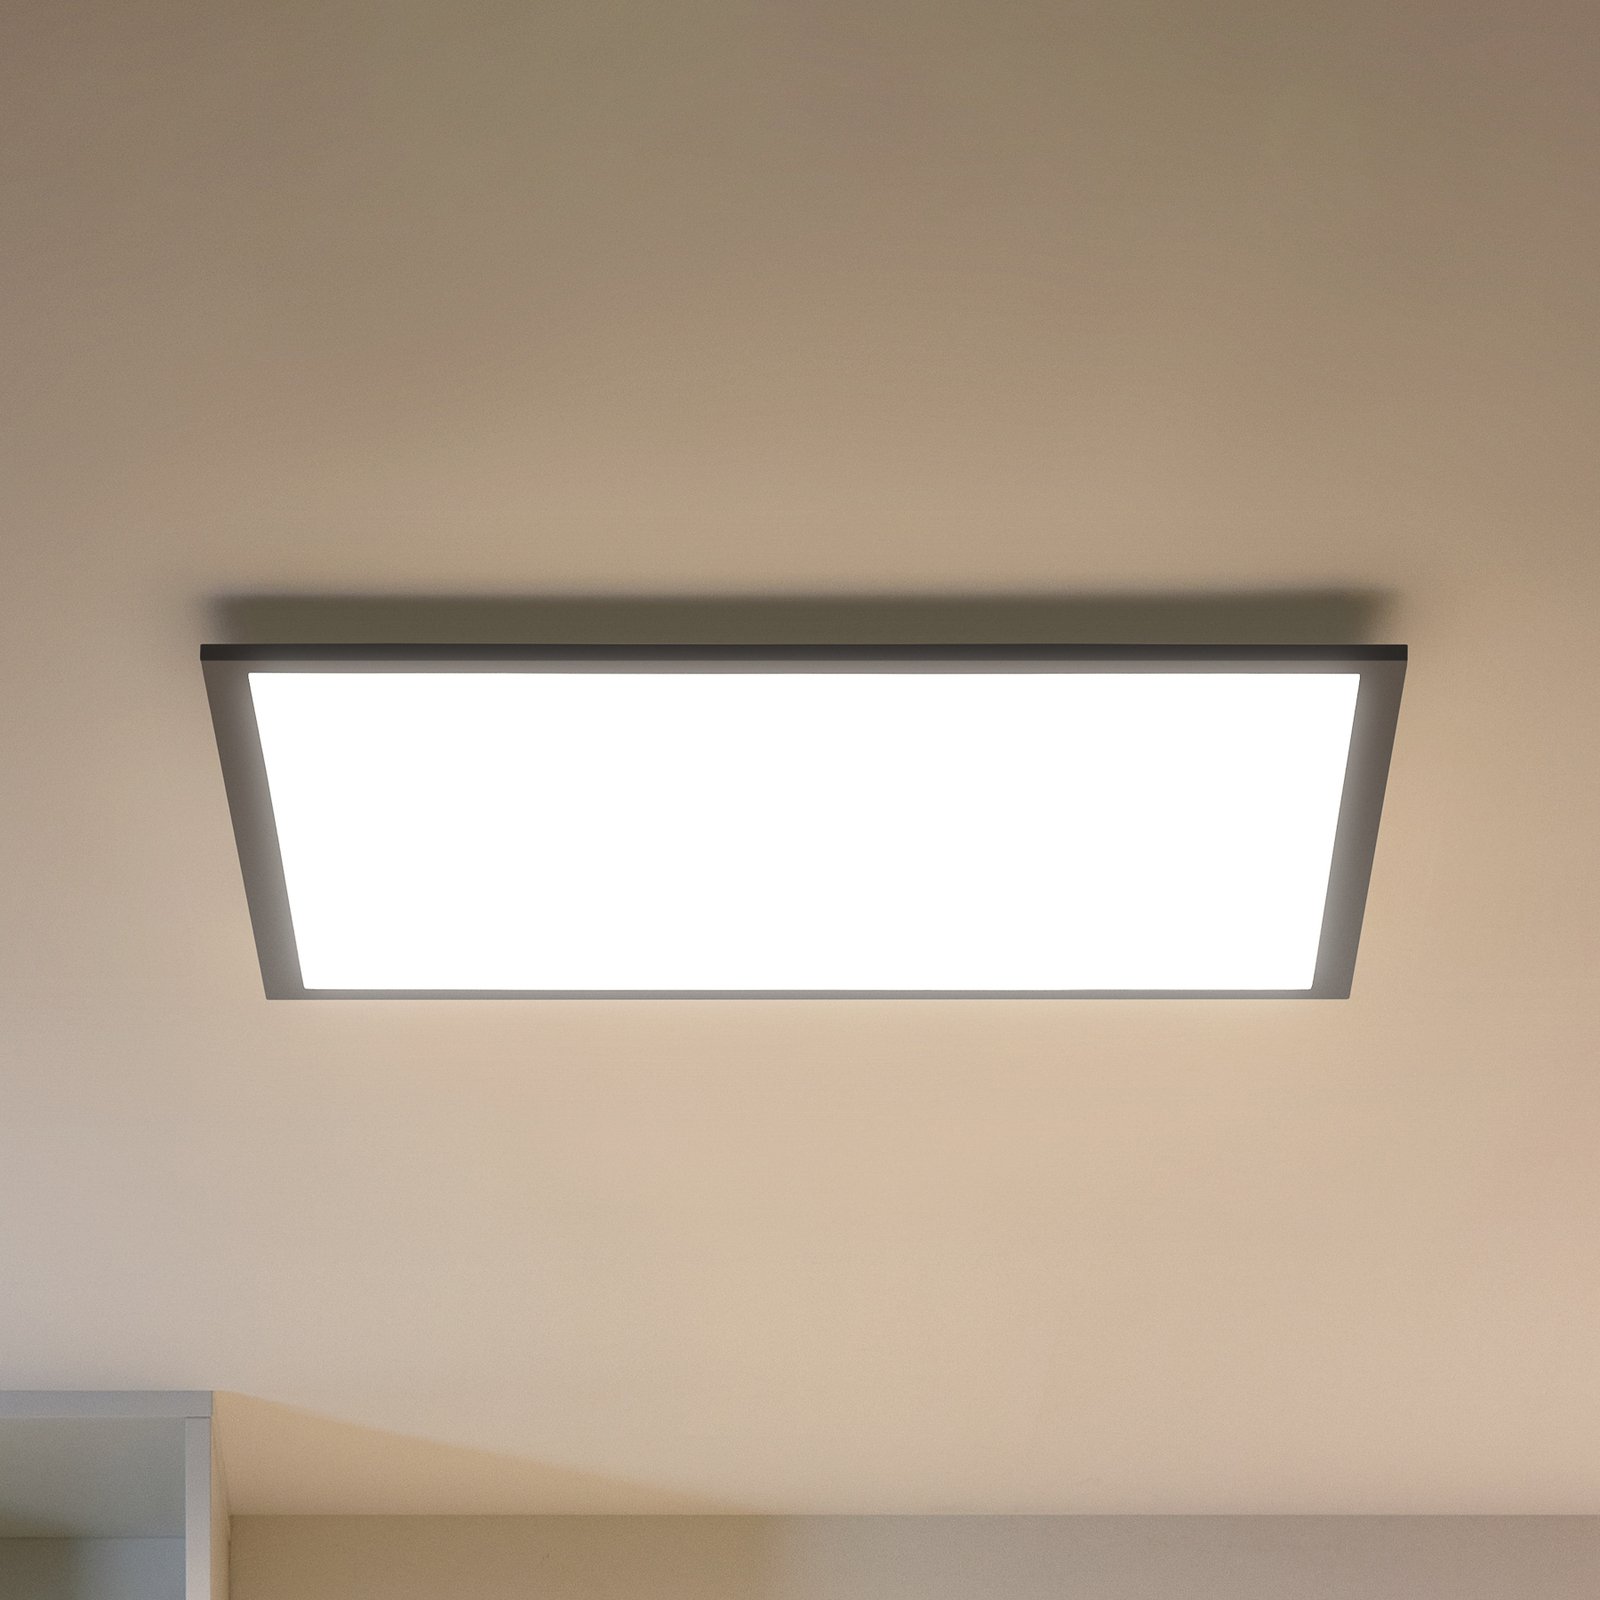 WiZ LED ceiling light panel, black, 60x60 cm